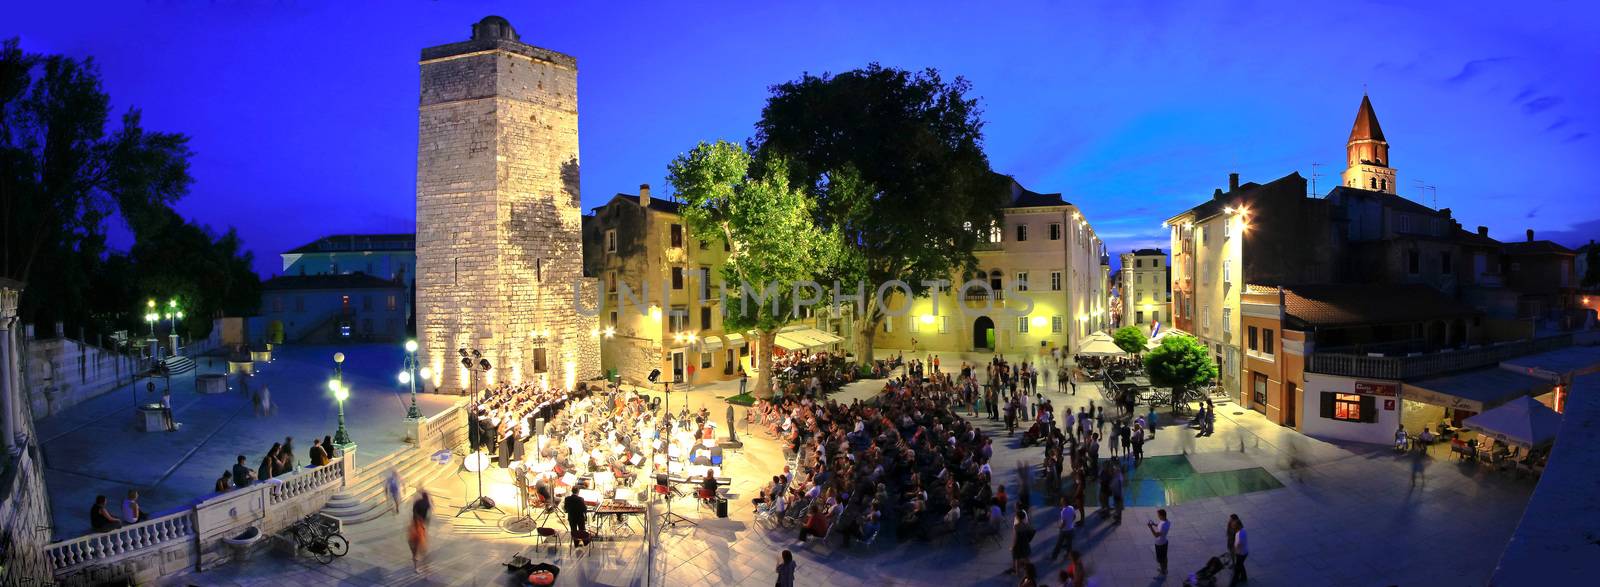 ZADAR, CROATIA - June 14 - Five wells square in Zadar, Croatia - by xbrchx